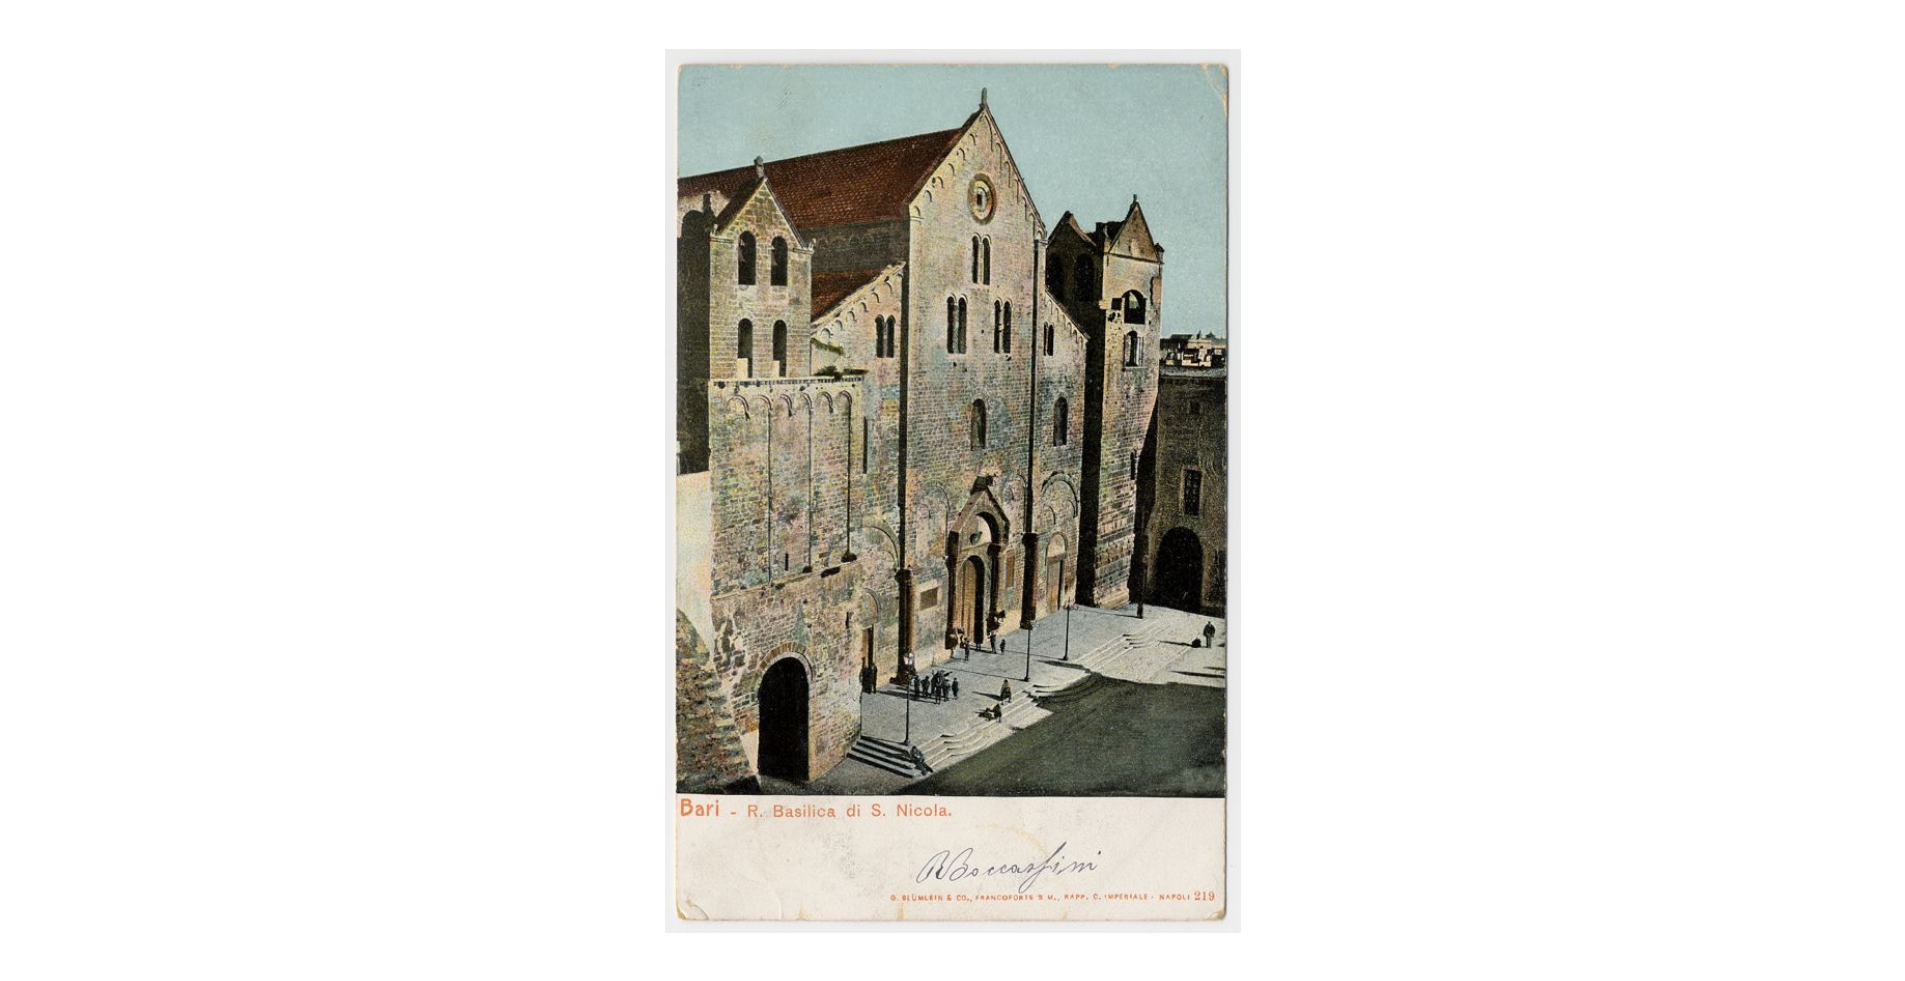 Fotografo non identificato, Bari - Basilica di S. Nicola di Bari, 1904, cartolina, FFC013995